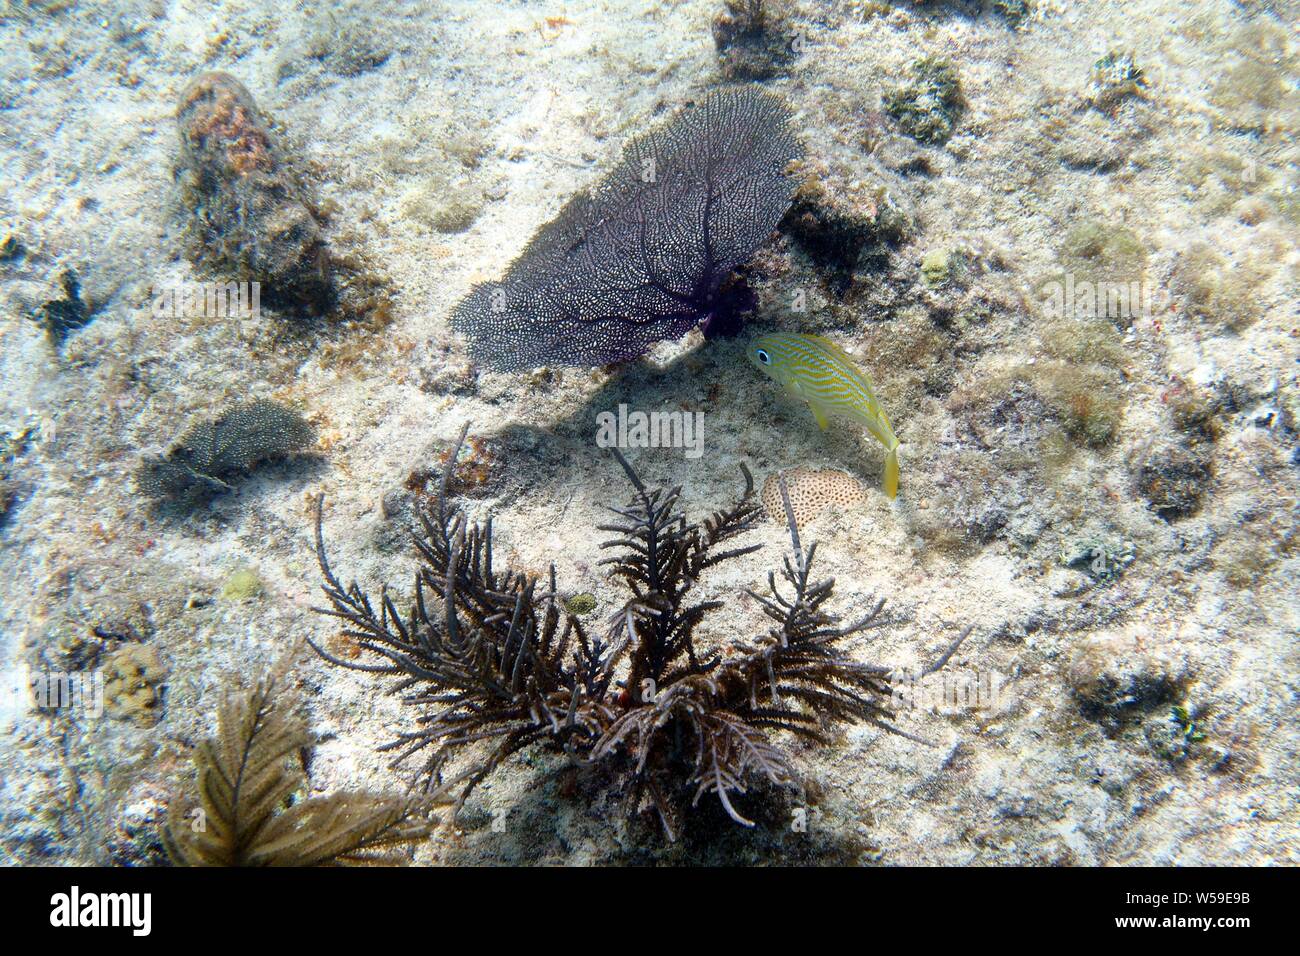 French Grunt (Haemulon flavolineatum) investigates a purple Common sea fan (Gorgonia flabellum), Little Bay, Anguilla, BWI. Stock Photo